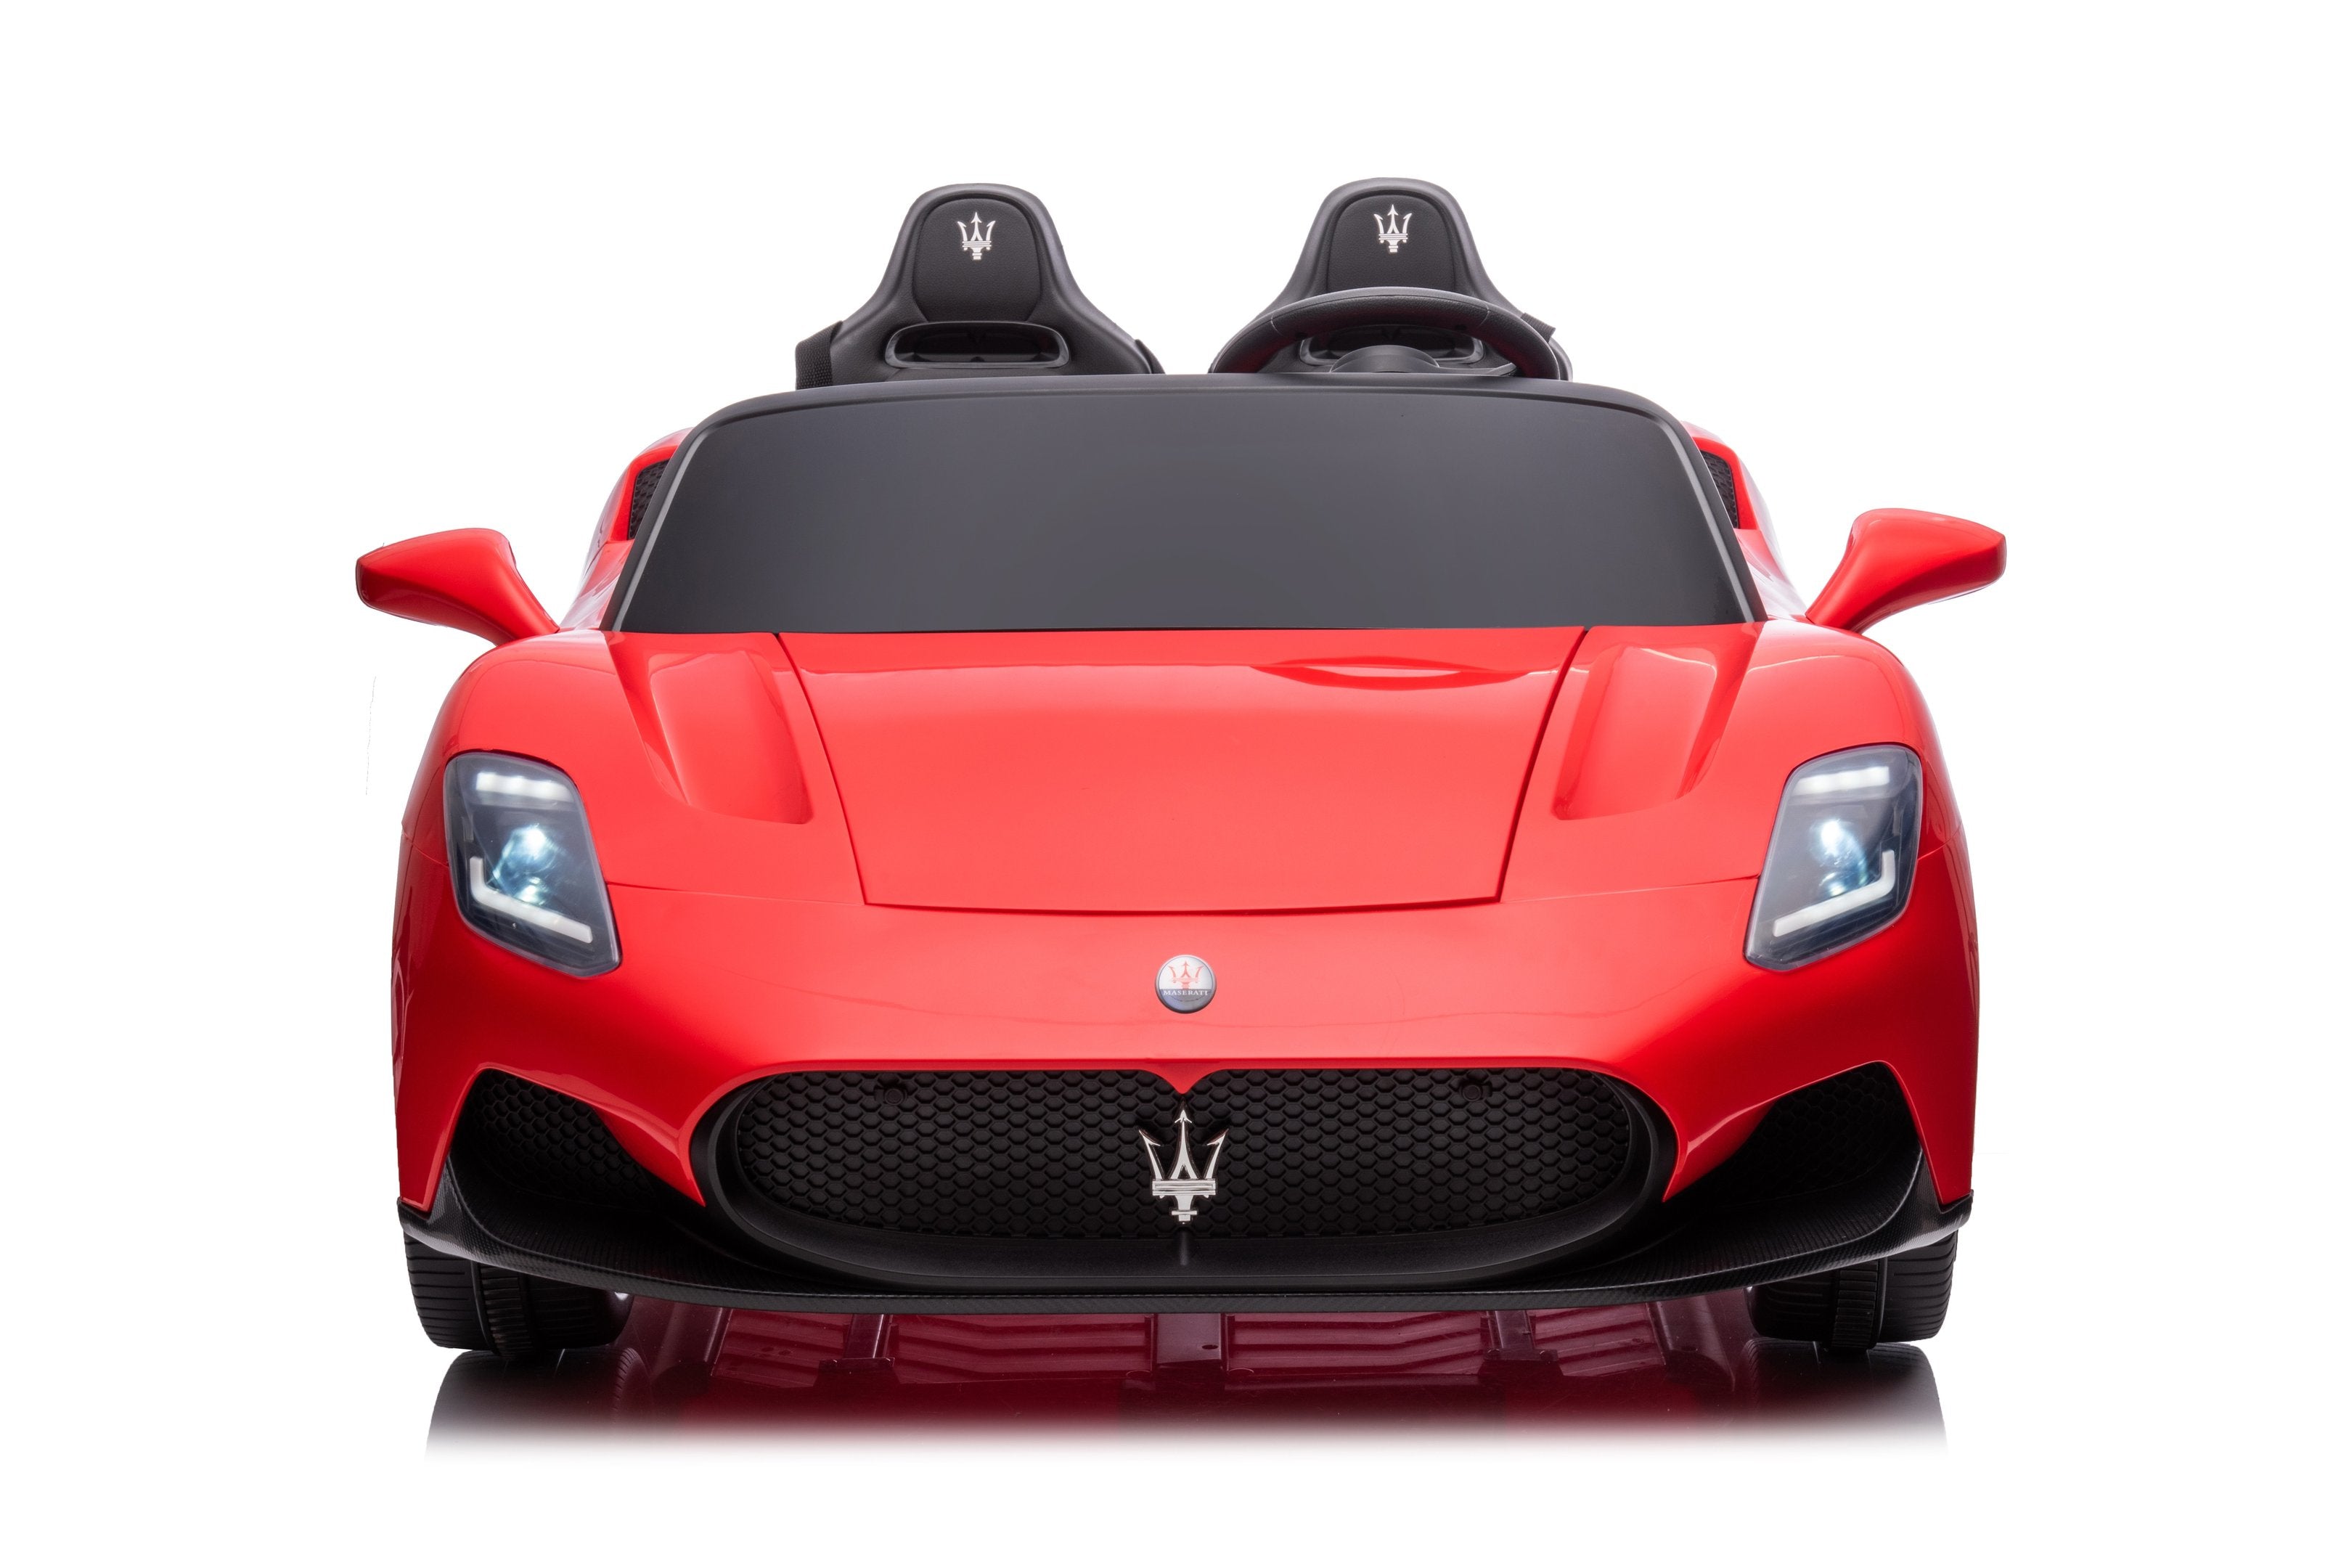 2023 Maserati MC20 V2 Car | 2 Seater > 24V (4x4) | Electric Riding Vehicle for Kids